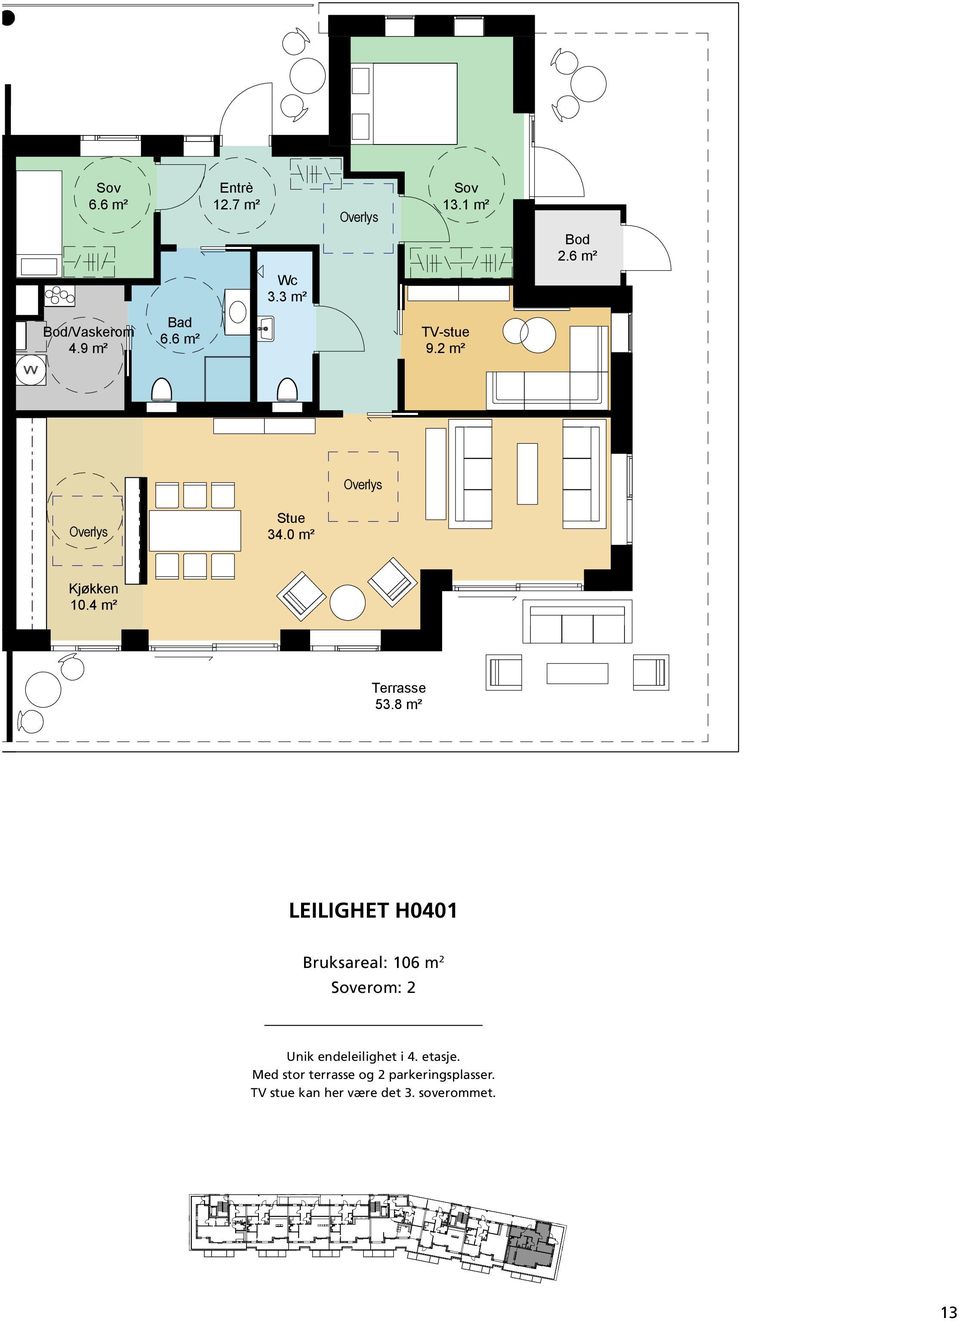 5 AREALER -leil. H 0401: BRA 106 m2 P-rom 101 m2 Unik endeleilighet i 4. etasje. Med stor terrasse og 2 parkeringsplasser. 53.